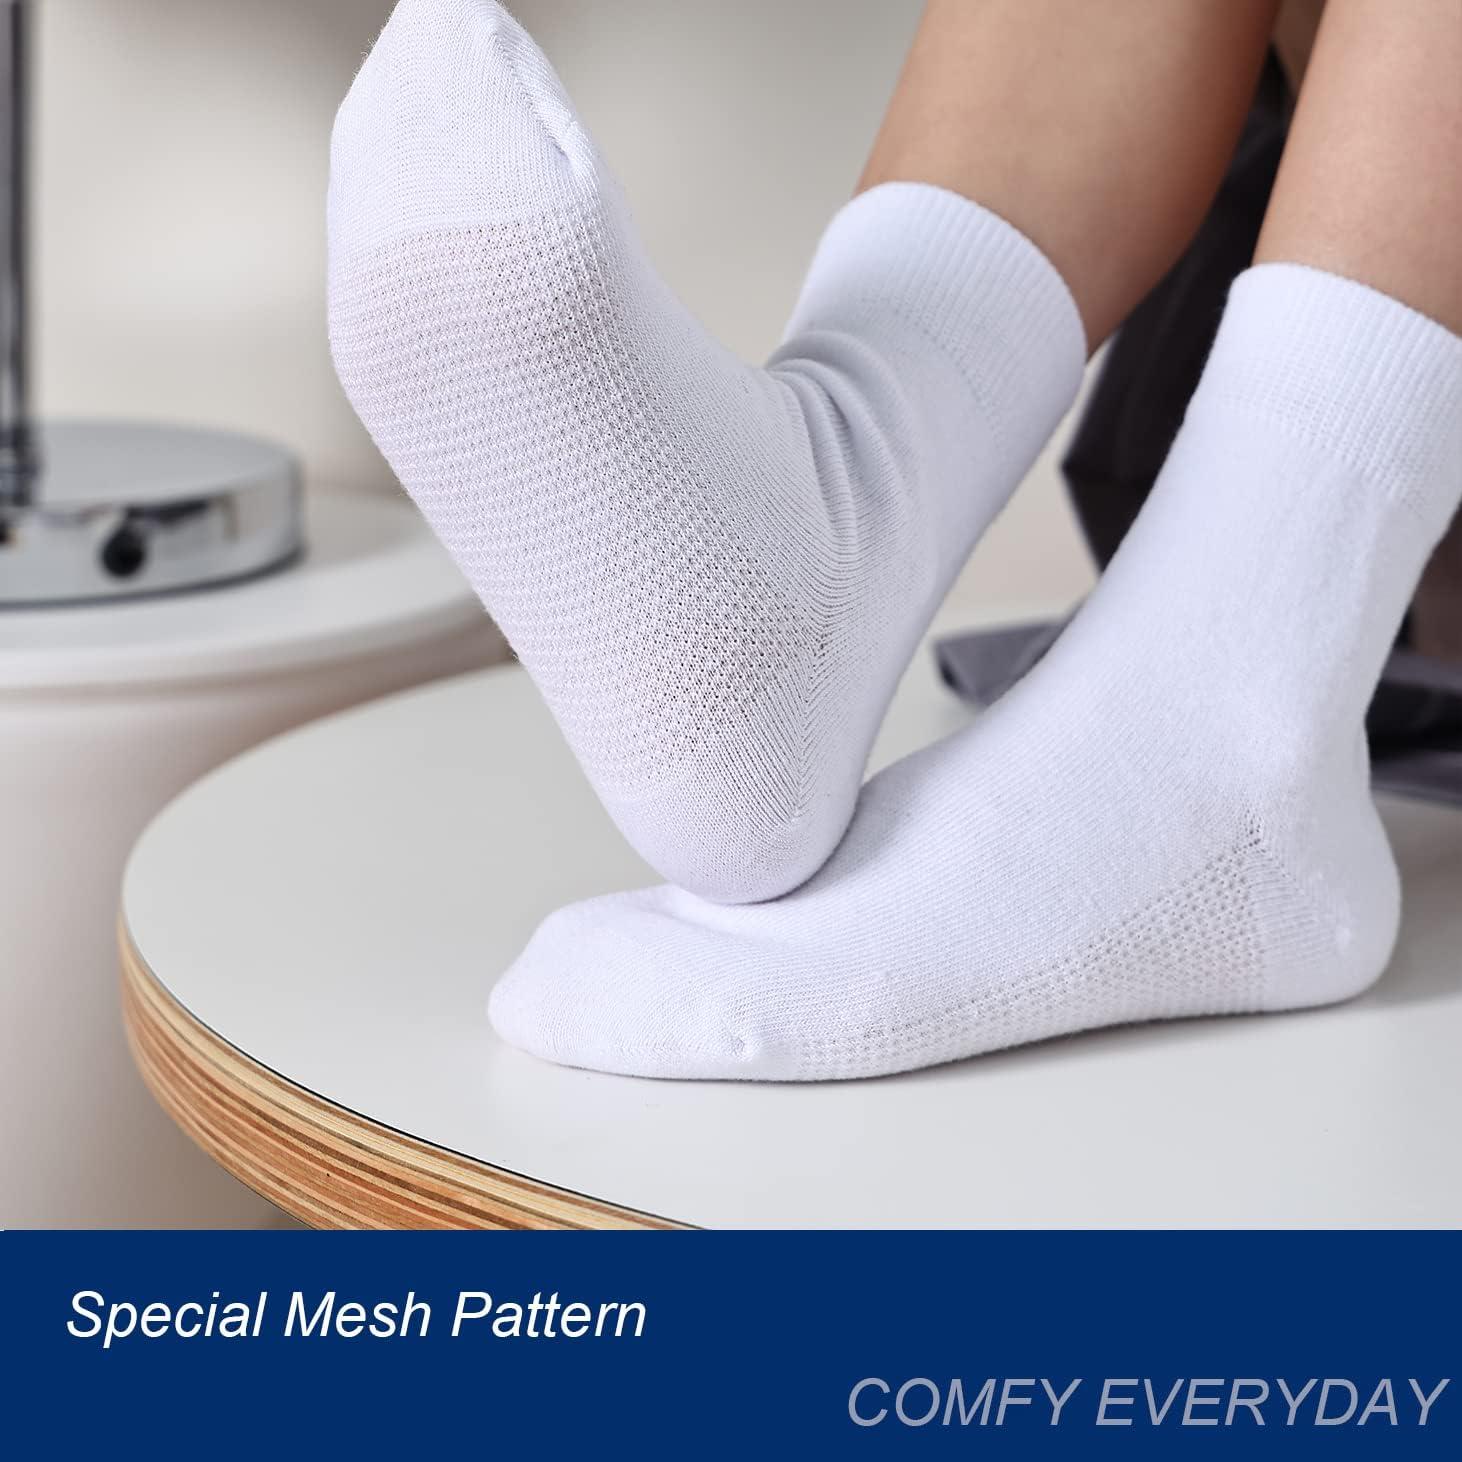 Mesh Ankle Socks 6-Pack for Girls